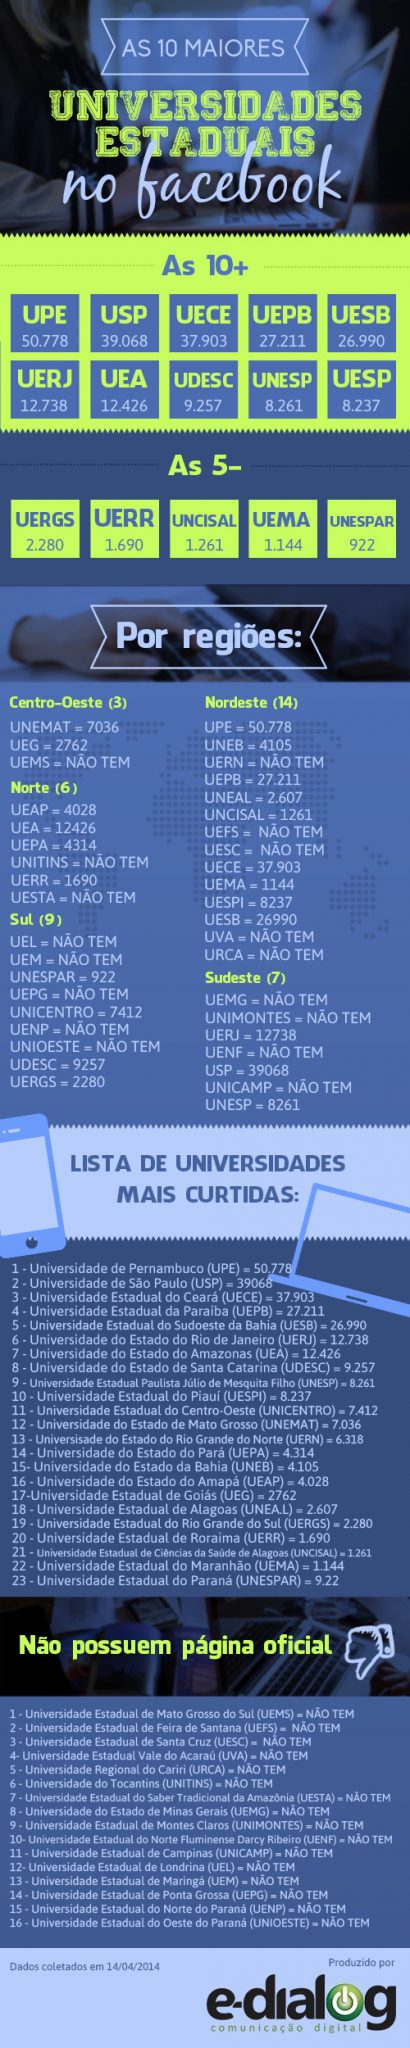 Universidade-Estaduais-no-Facebook